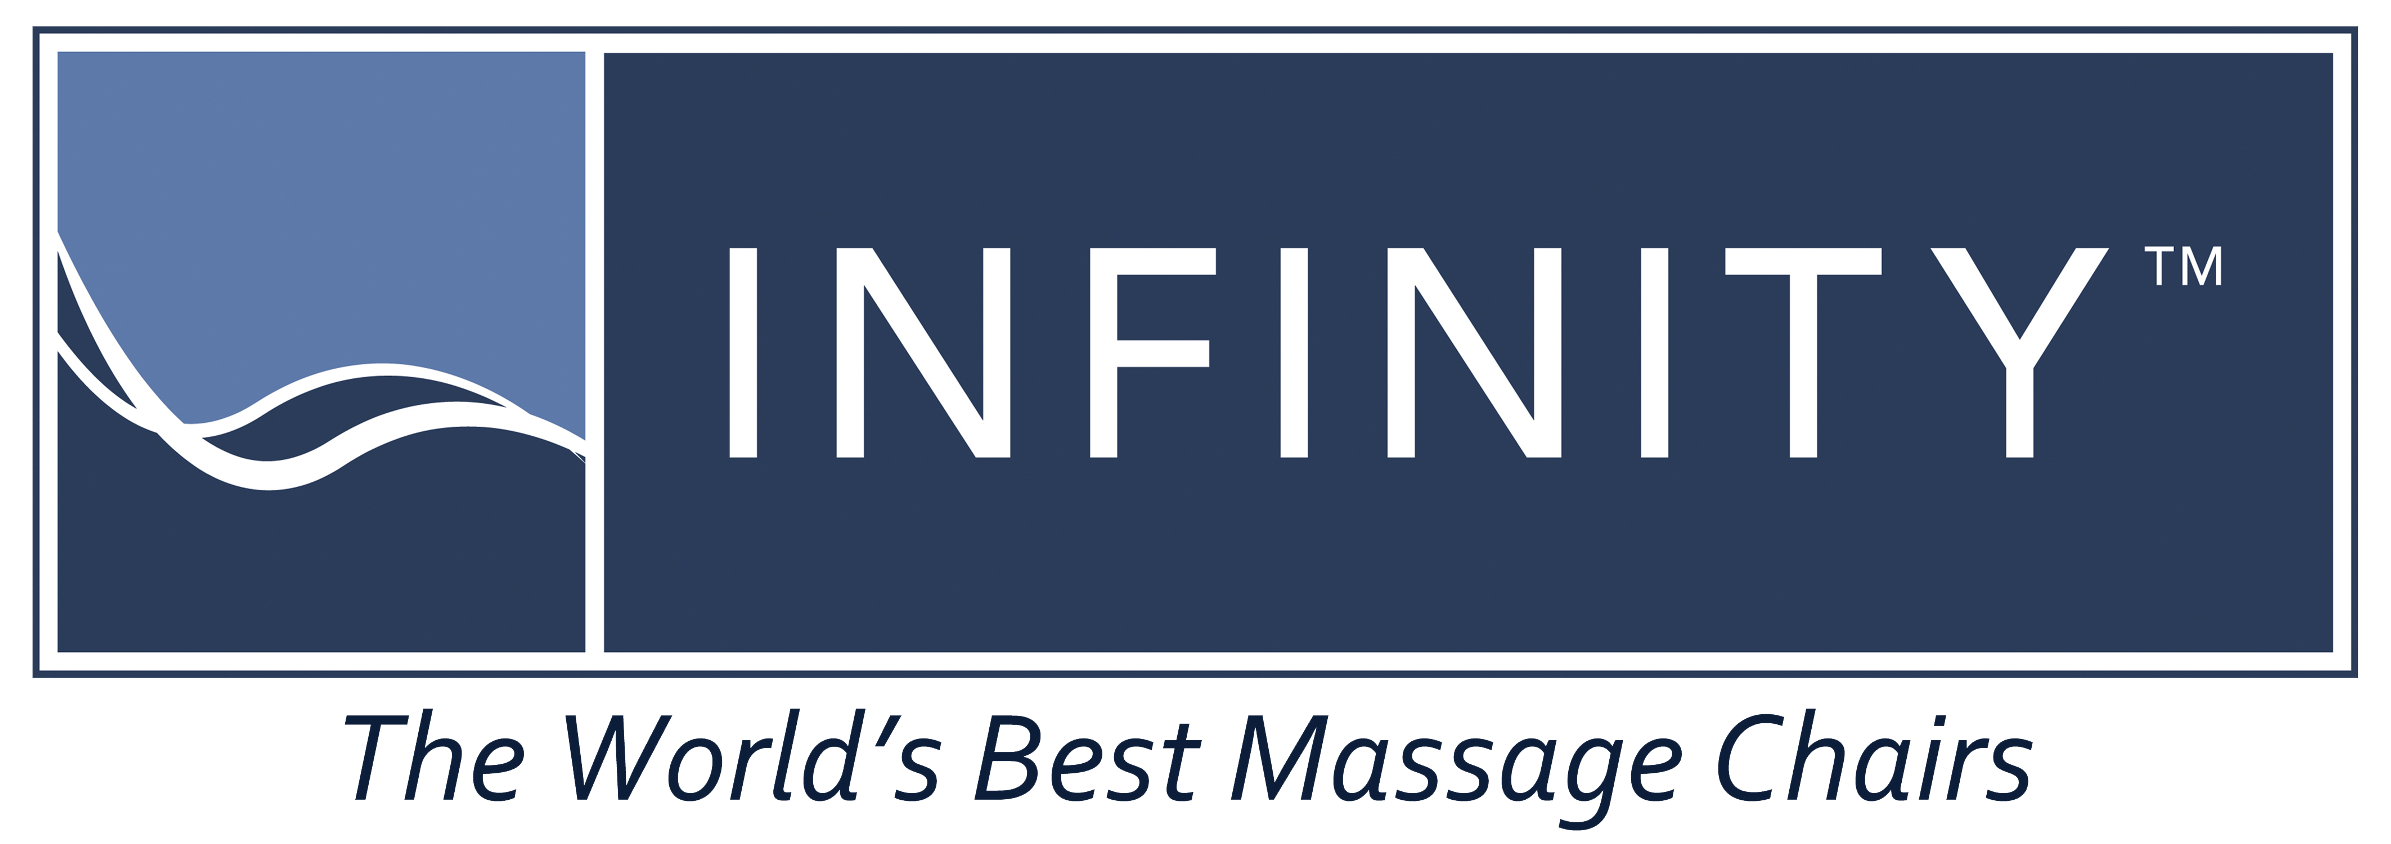 mattress firm infinity massage chair